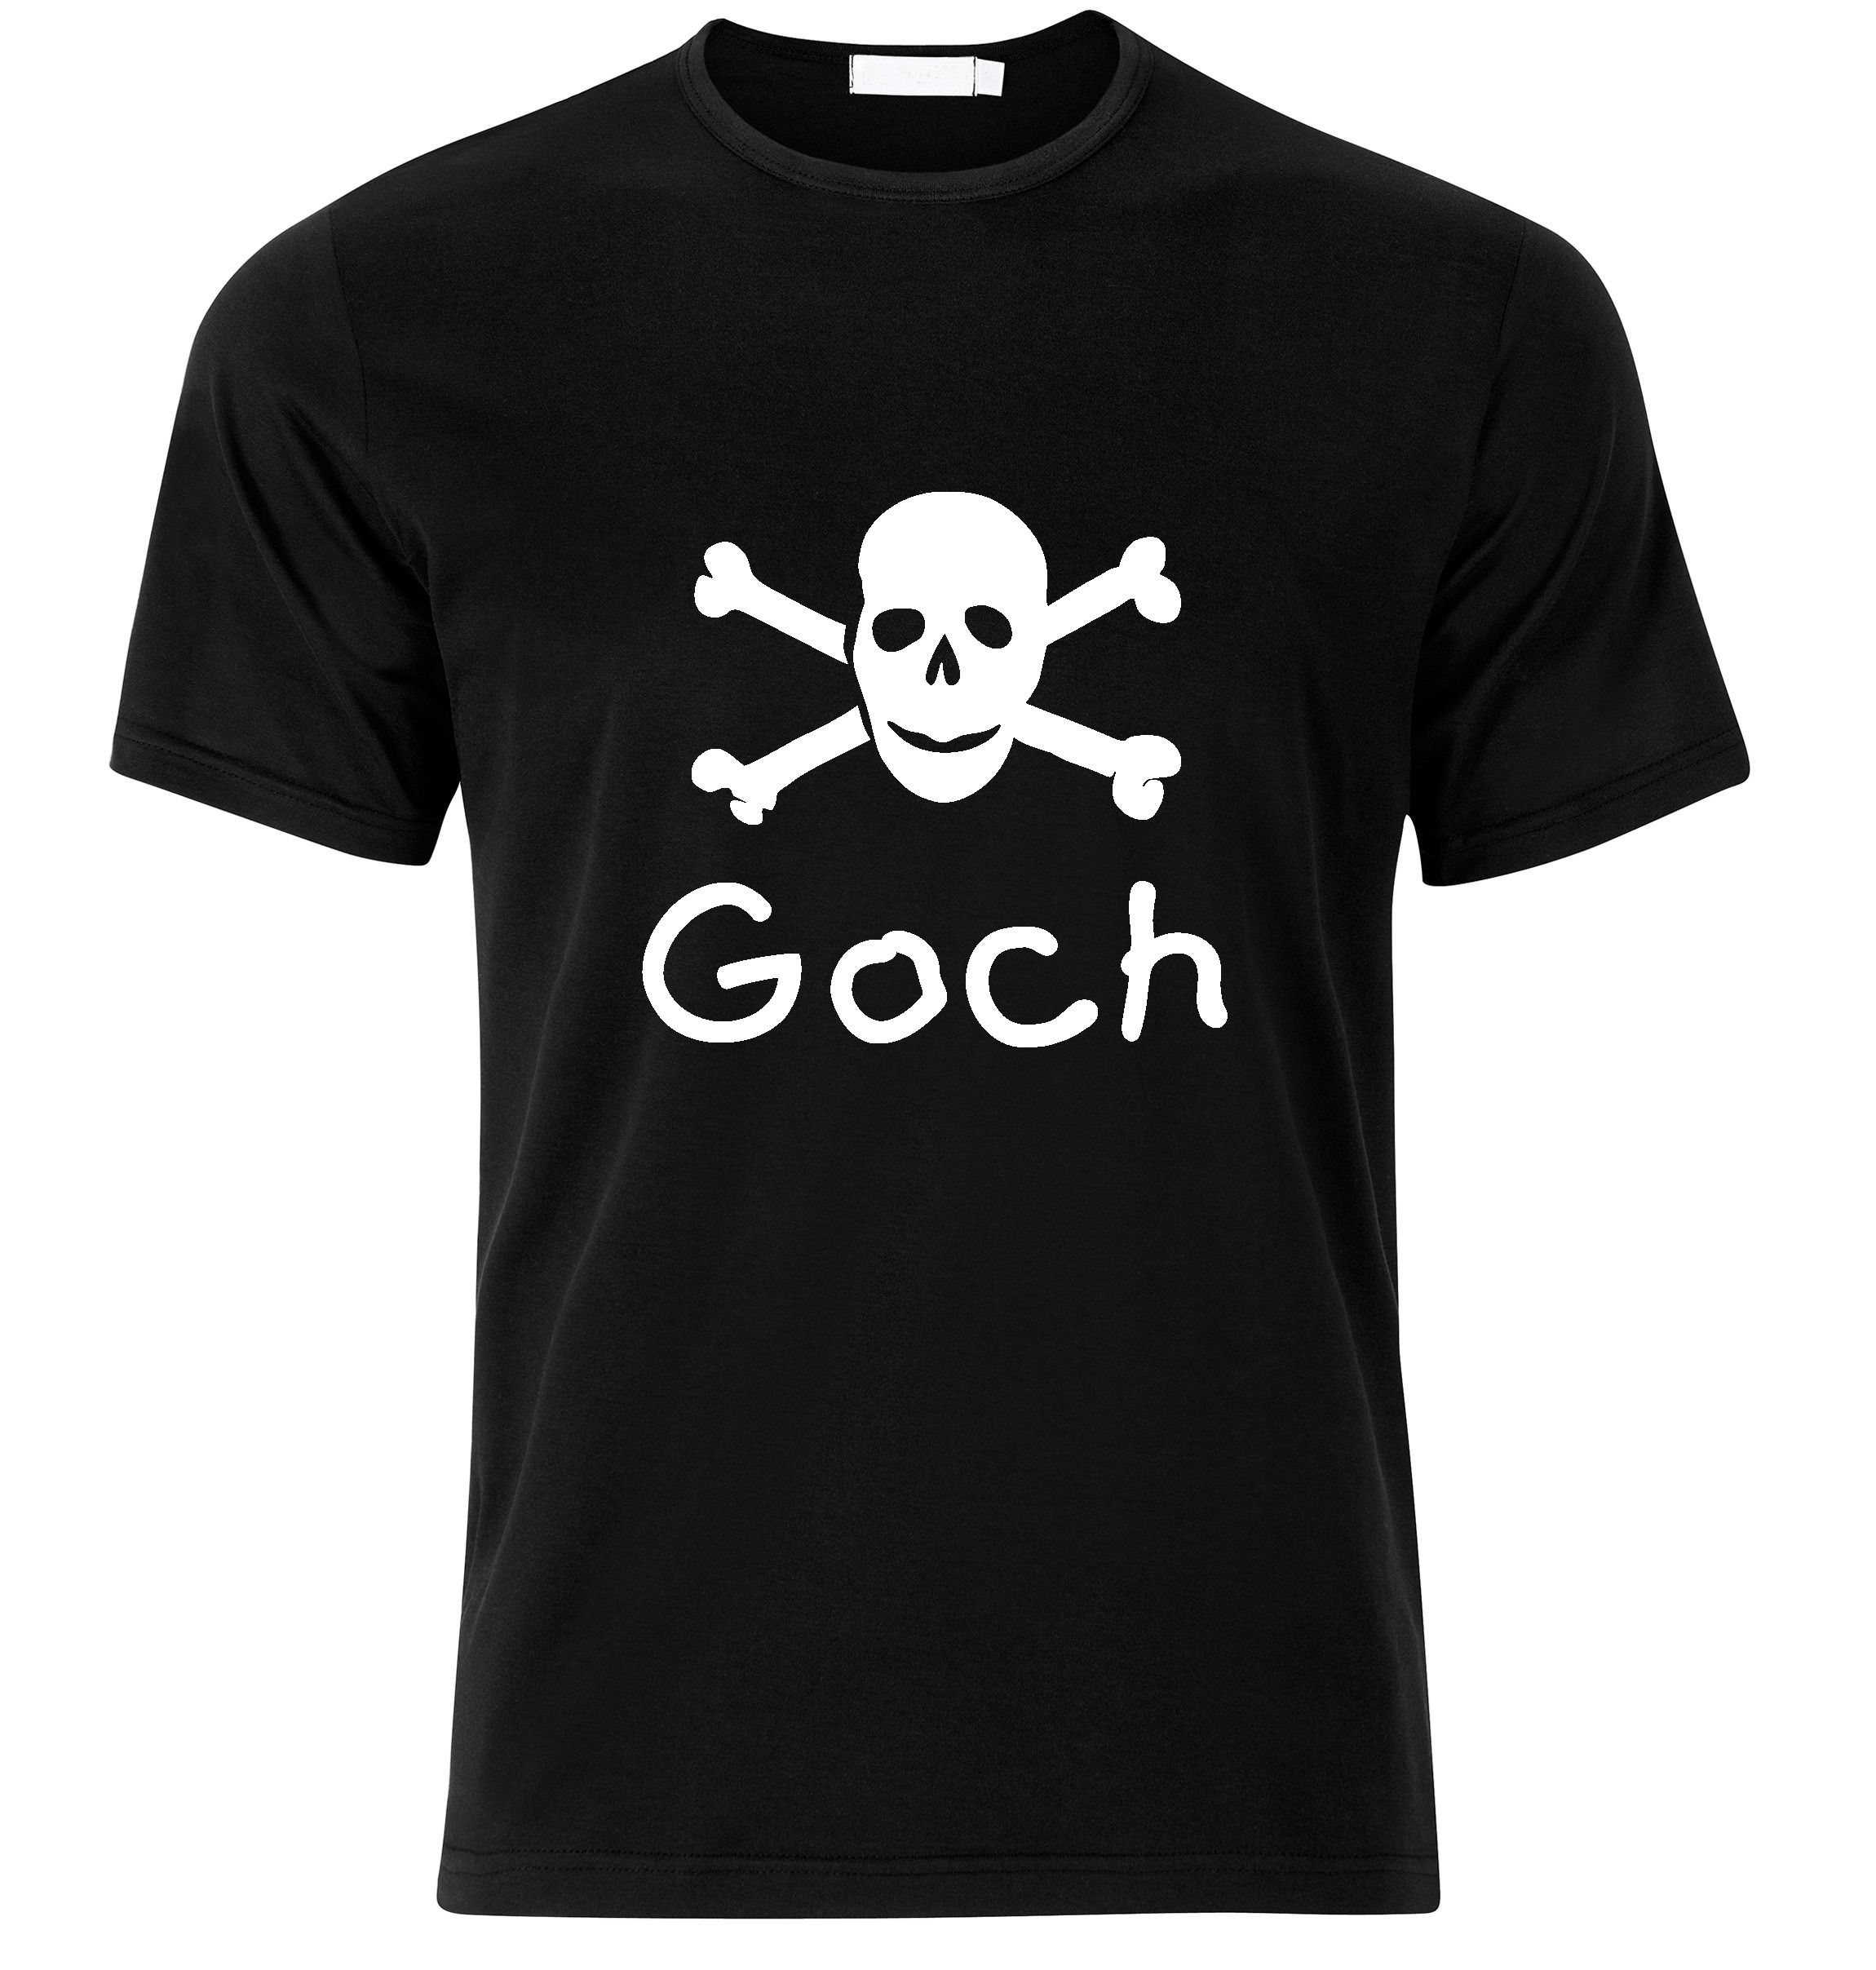 T-Shirt Goch Jolly Roger, Totenkopf